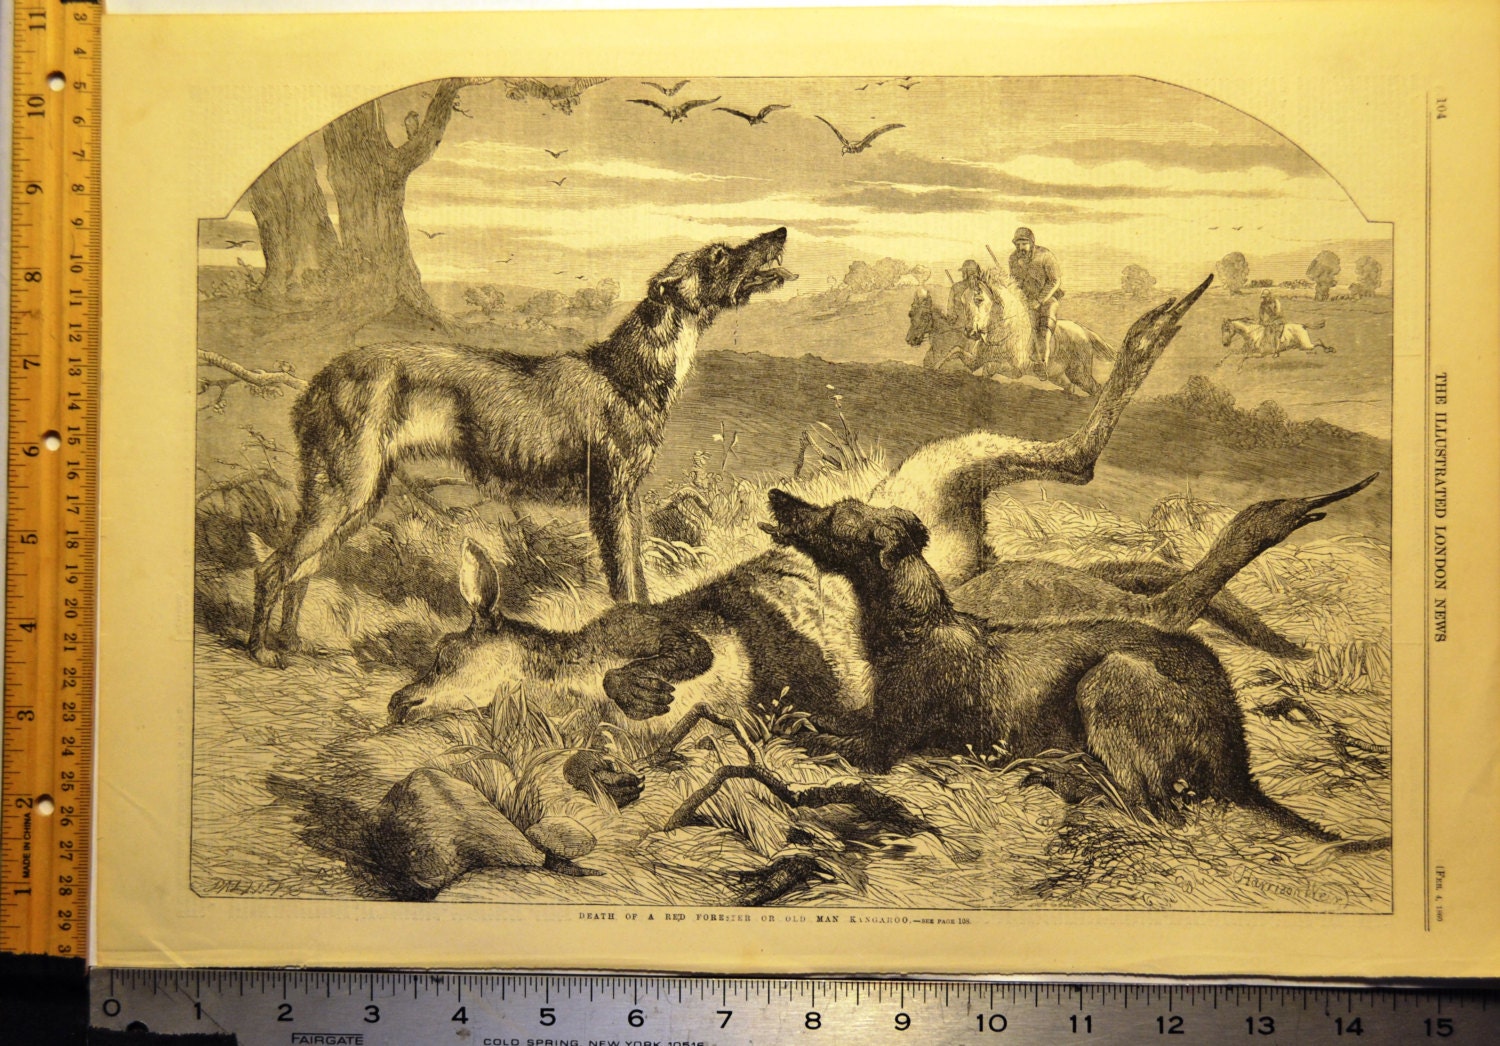 Scena di caccia originale antica stampa 1860 Illustrated London News Harrison Weir litografia acquaforte cani canguro cacciatori Home Decor